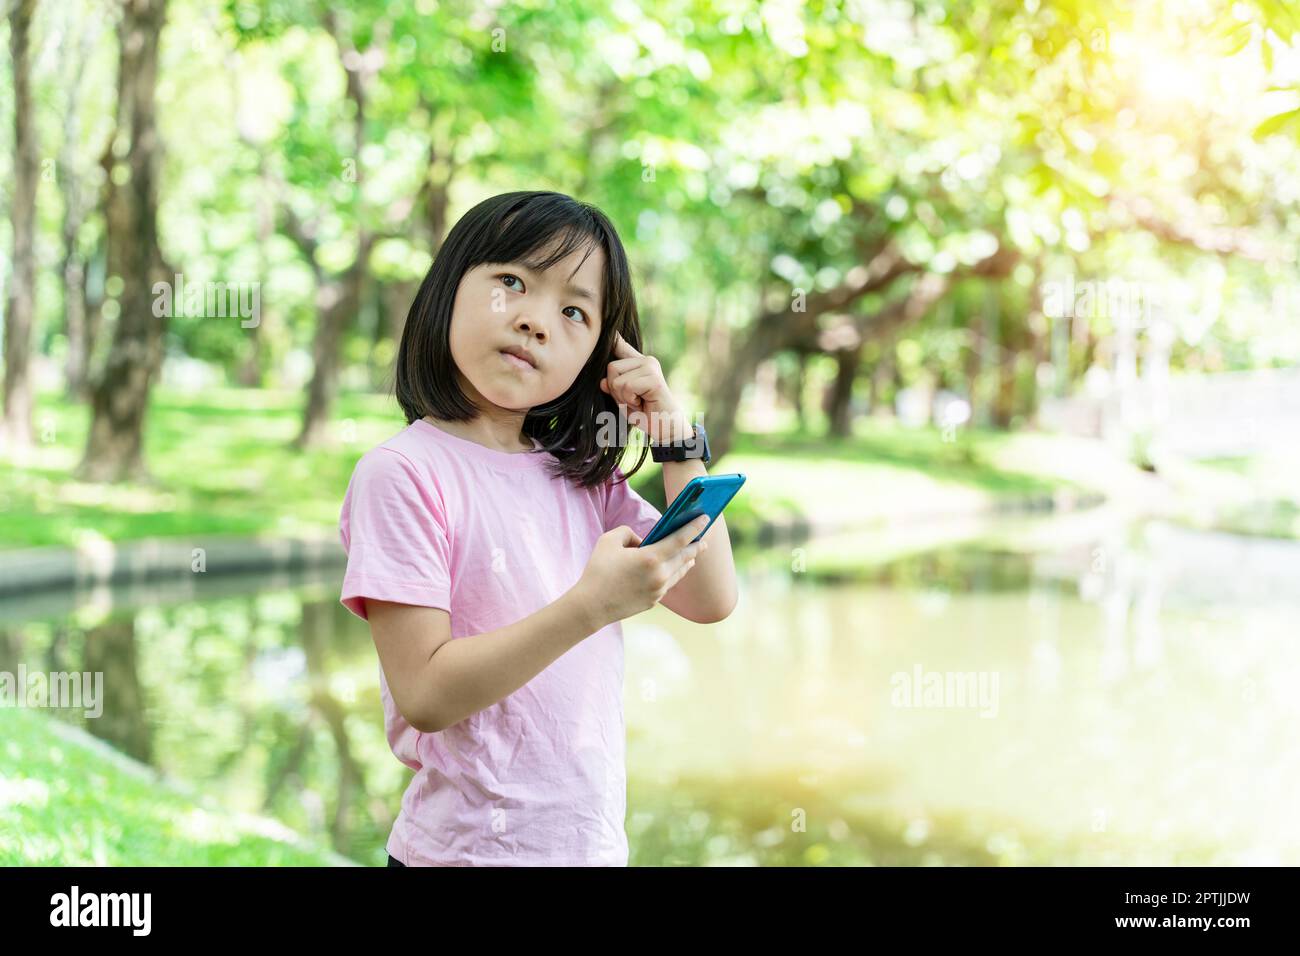 Bella bambina asiatica con smartphone mobile. La bambina sta giocando nel gioco digitale nel parco verde. Foto Stock